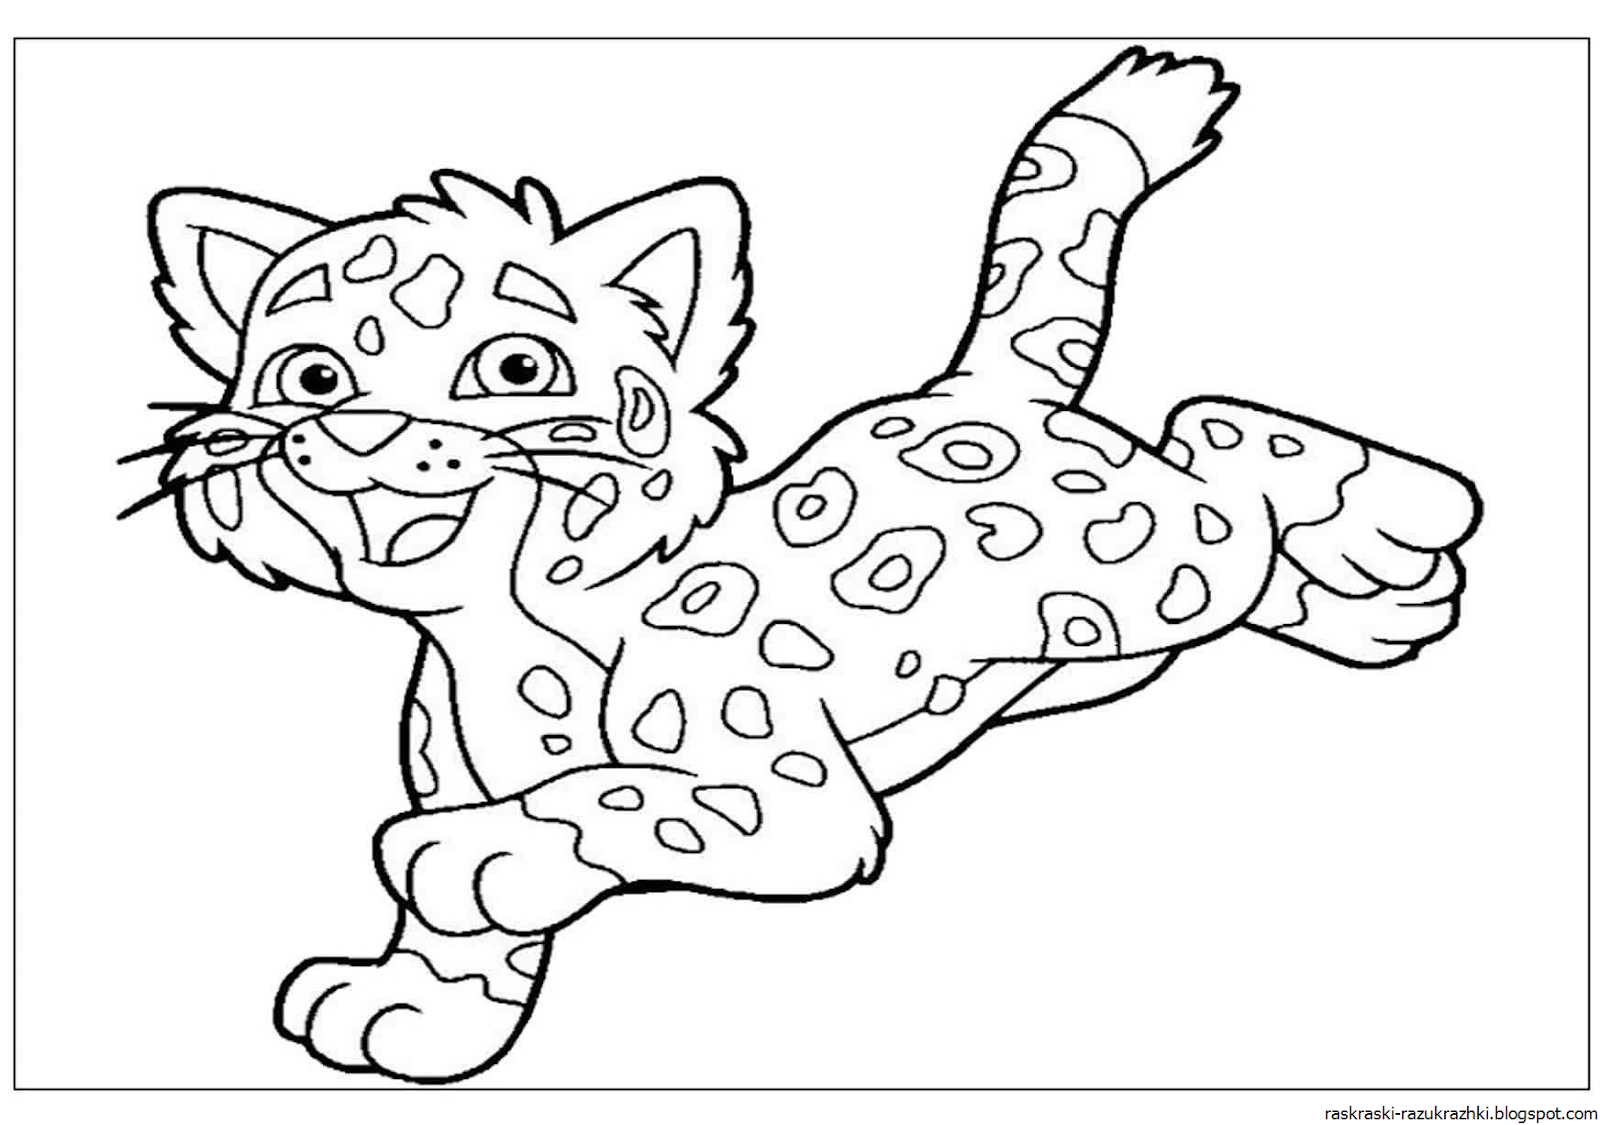 Раскраска тиг. Раскраска Лео и Тиг Лео. Лео Тиг Лео гепард. Леопард раскраска для детей. Раскраска Леопардик.